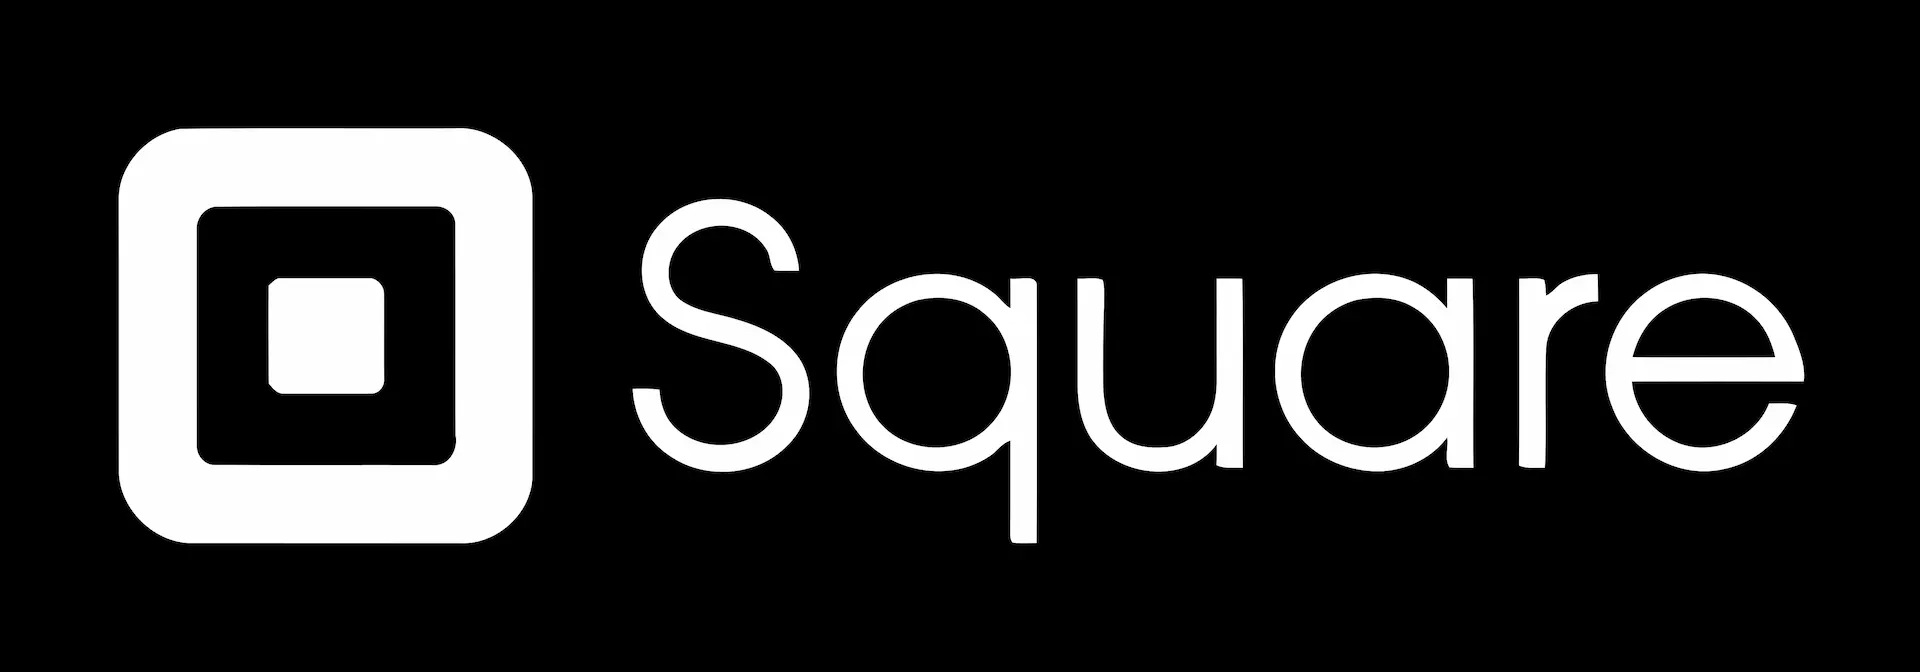 Square Data Scientist Interview Guide